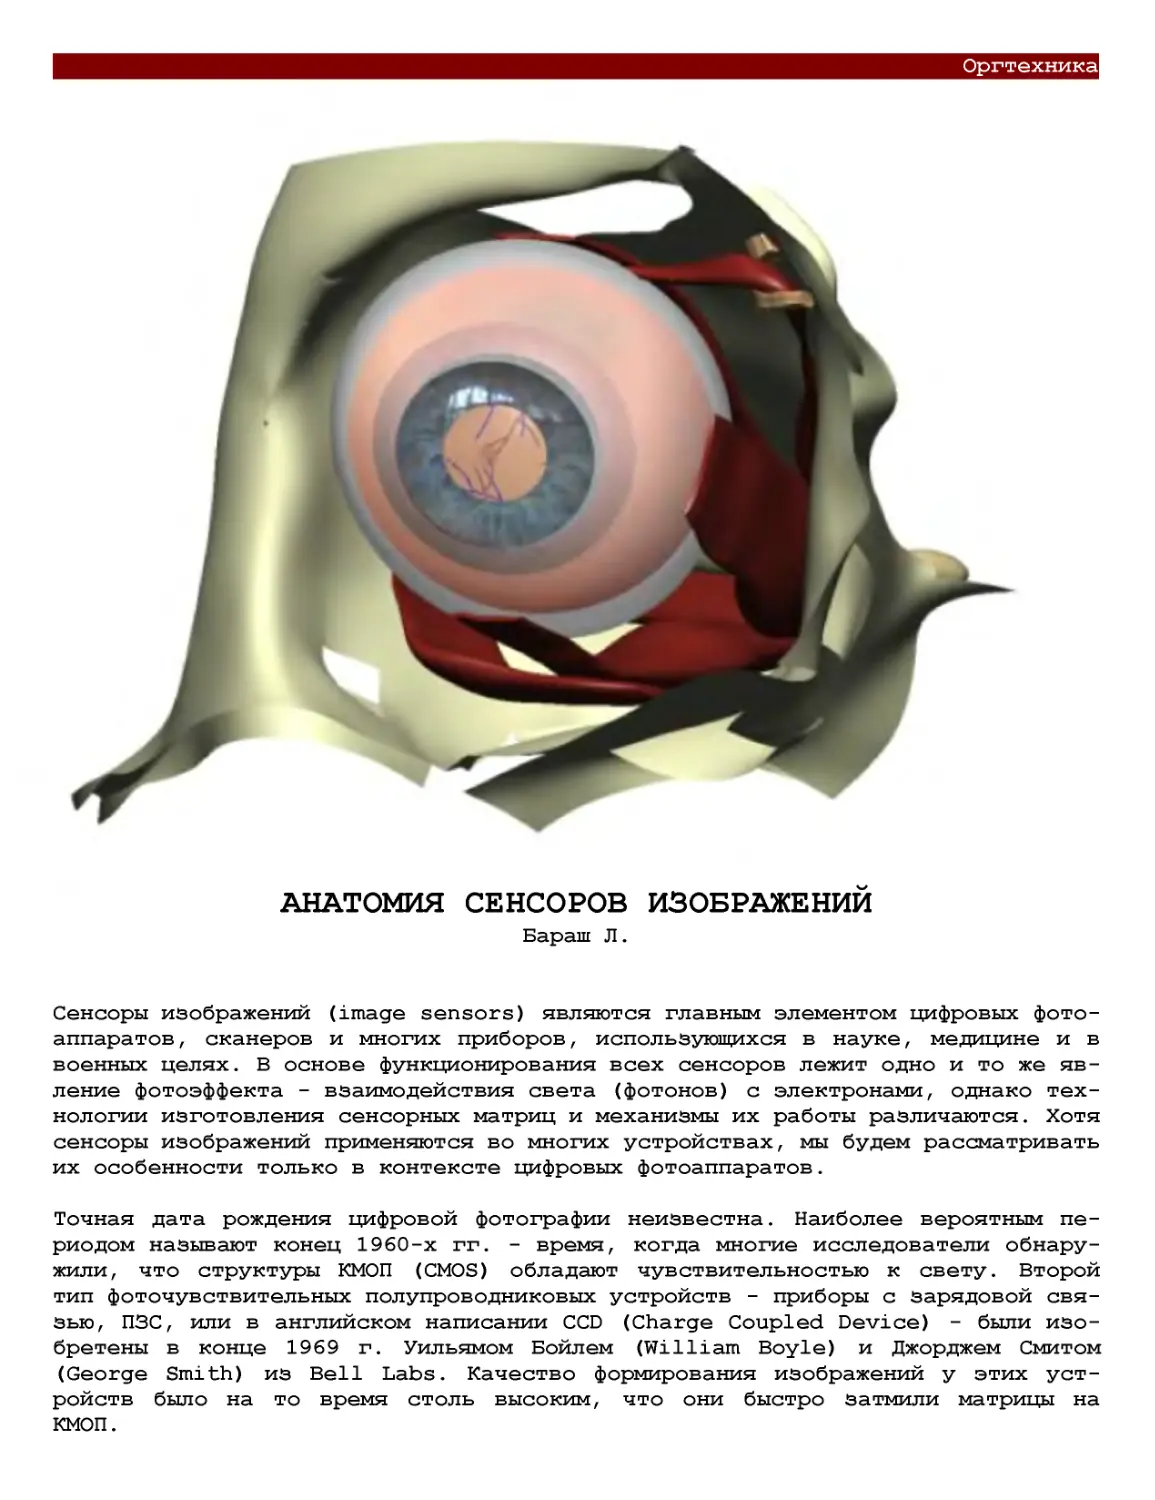 Анатомия сенсоров изображений